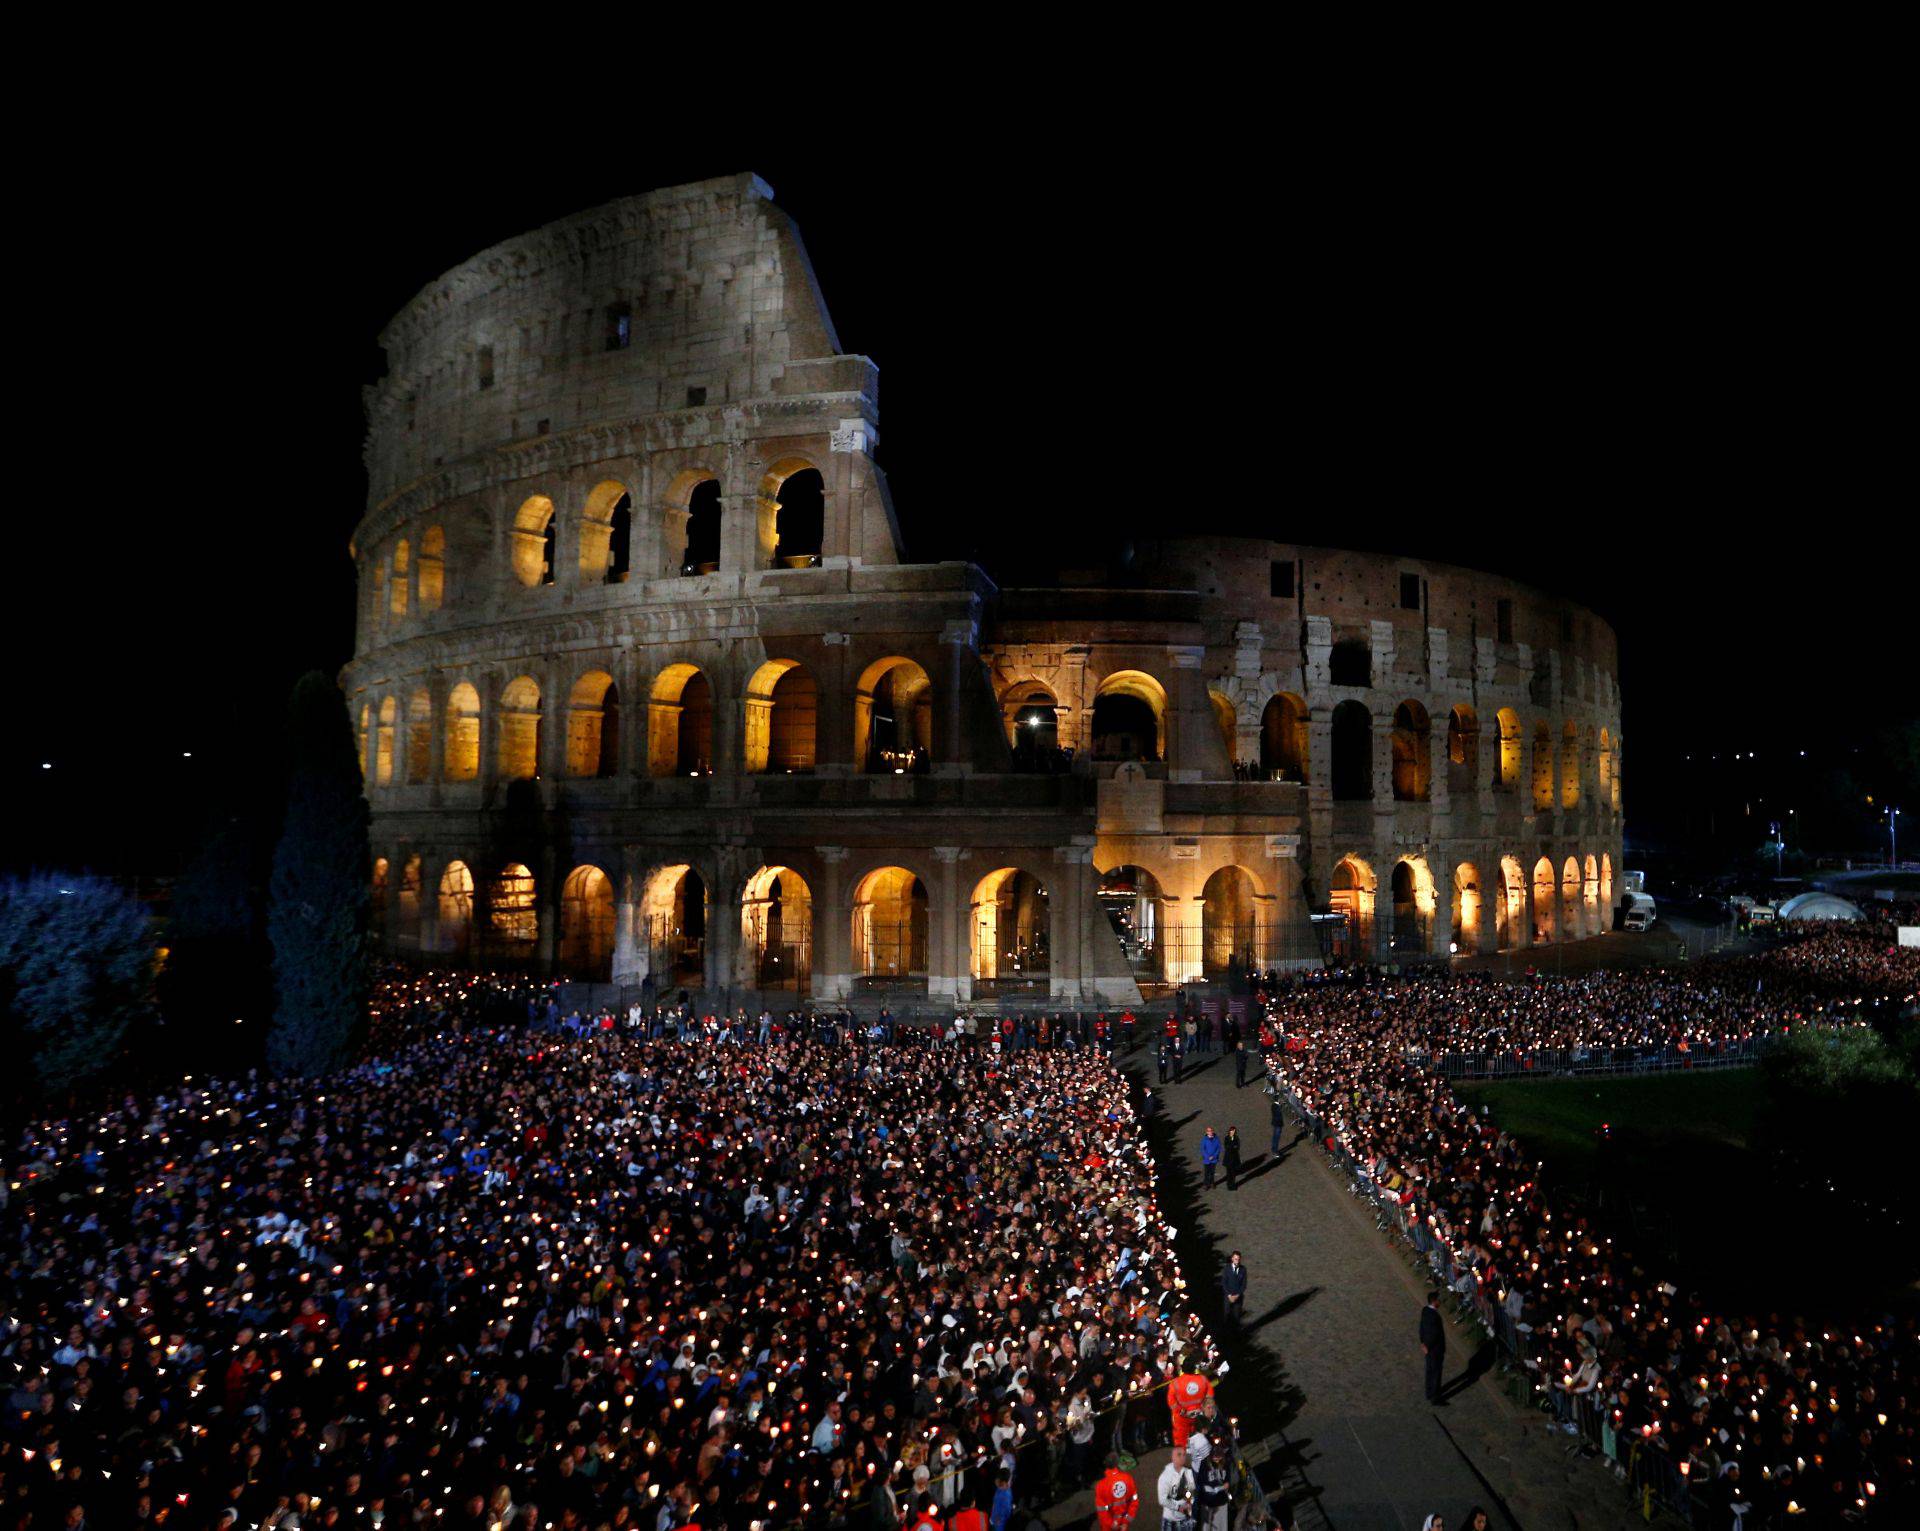 Papa Franjo predvodio je Križni put pred tisućama ljudi u Rimu